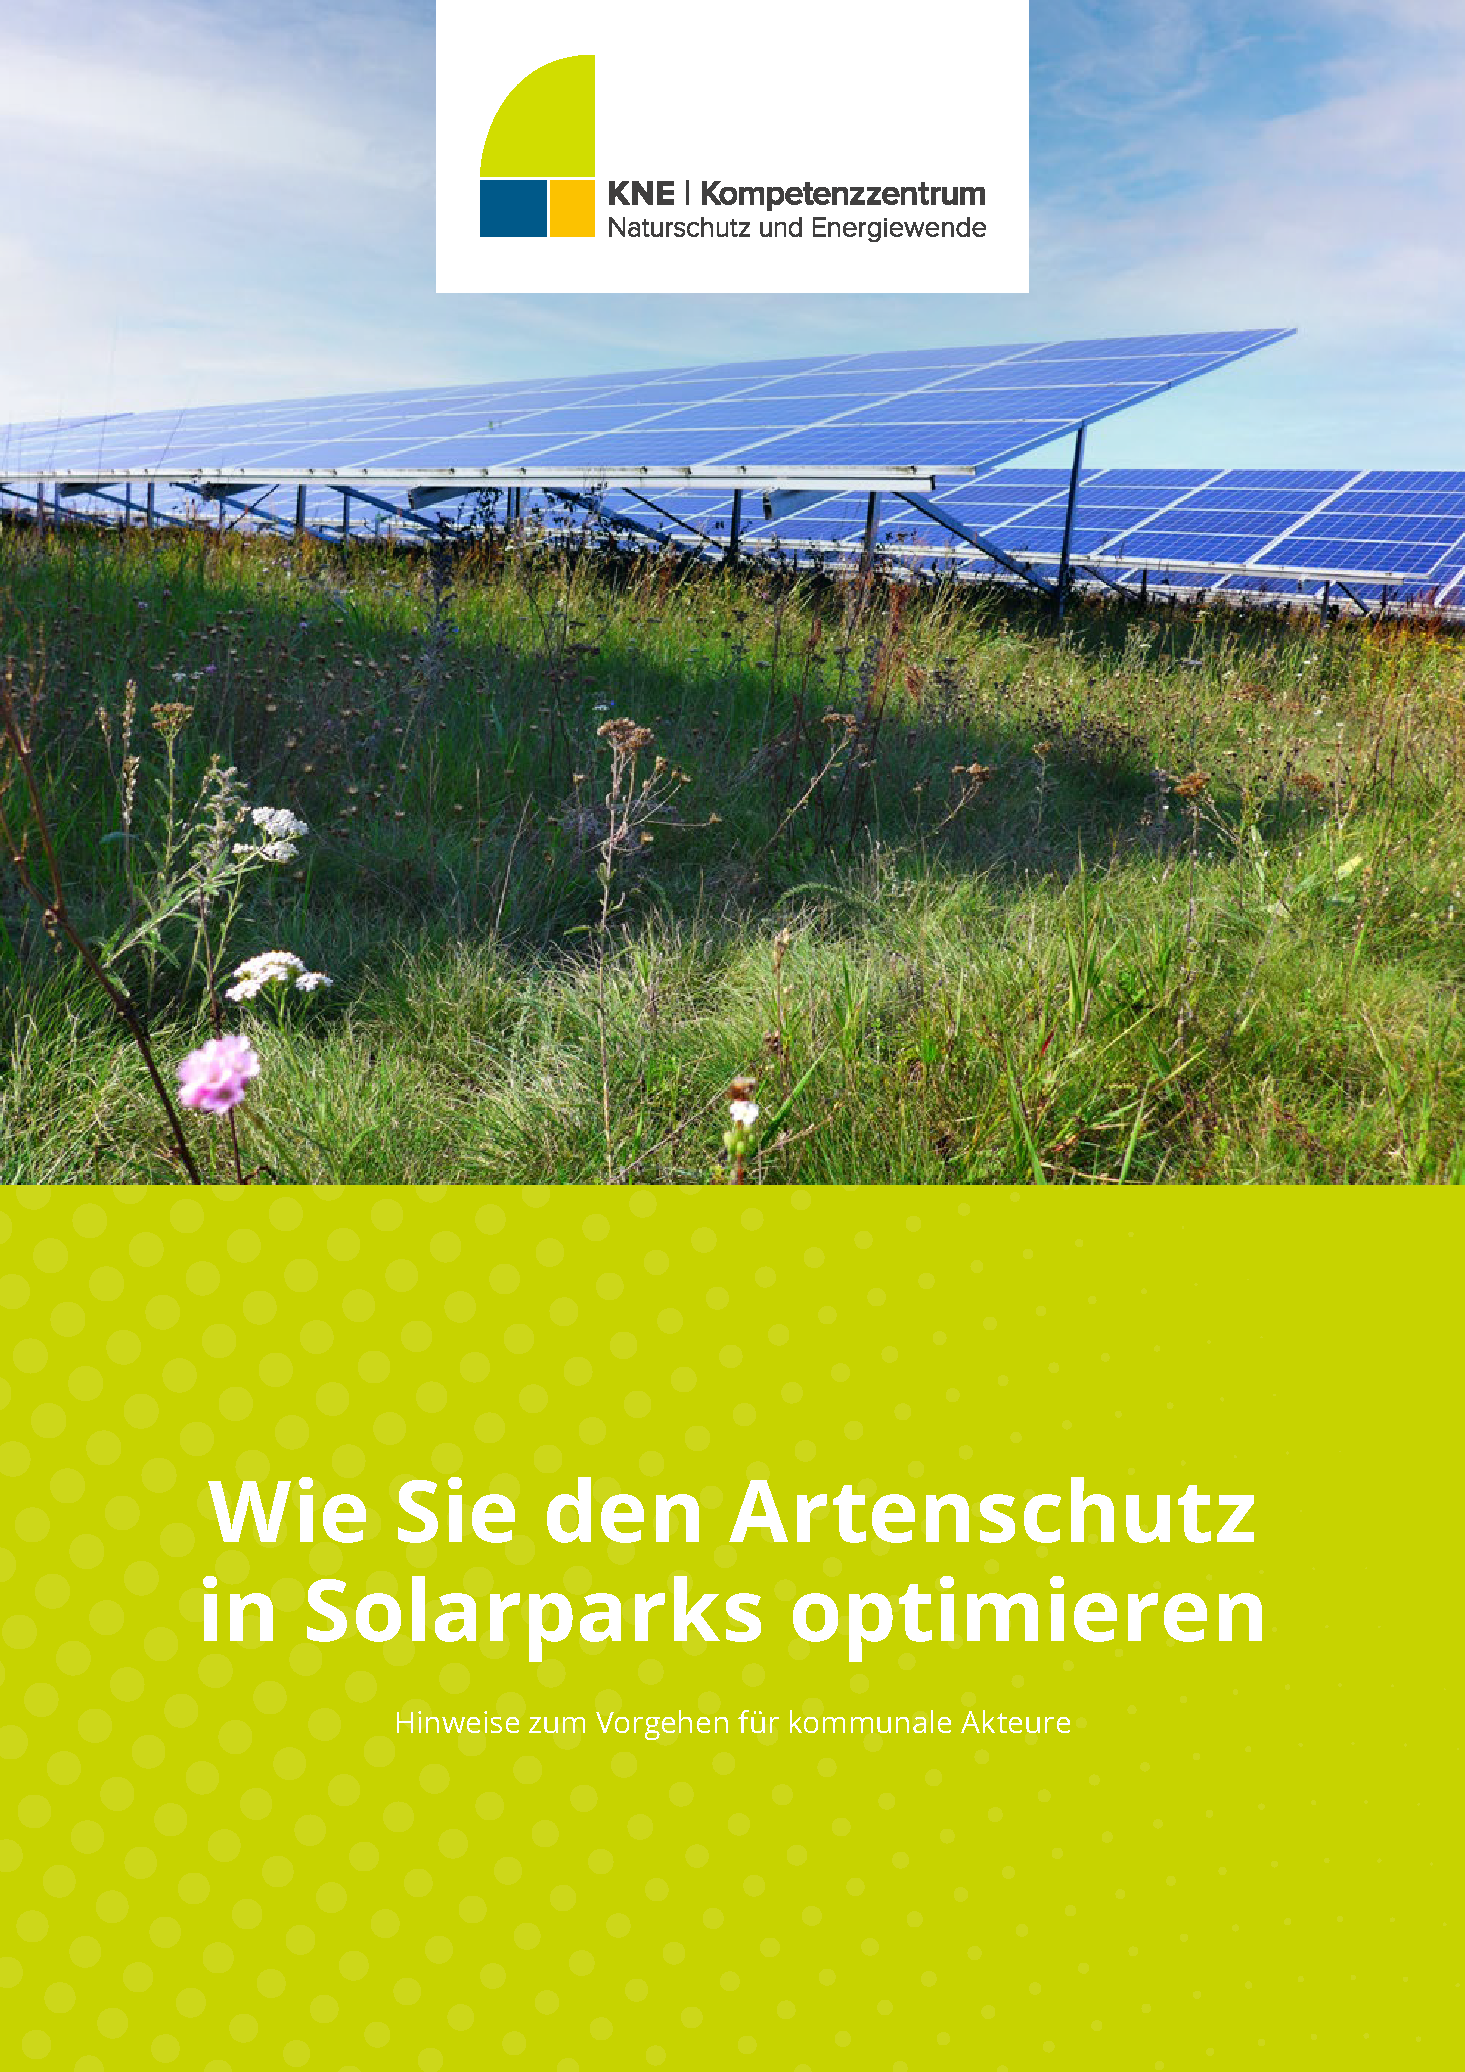 Titel Publikation KNE_Wie_Sie_den-Artenschutz_in_Solarparks_optimieren